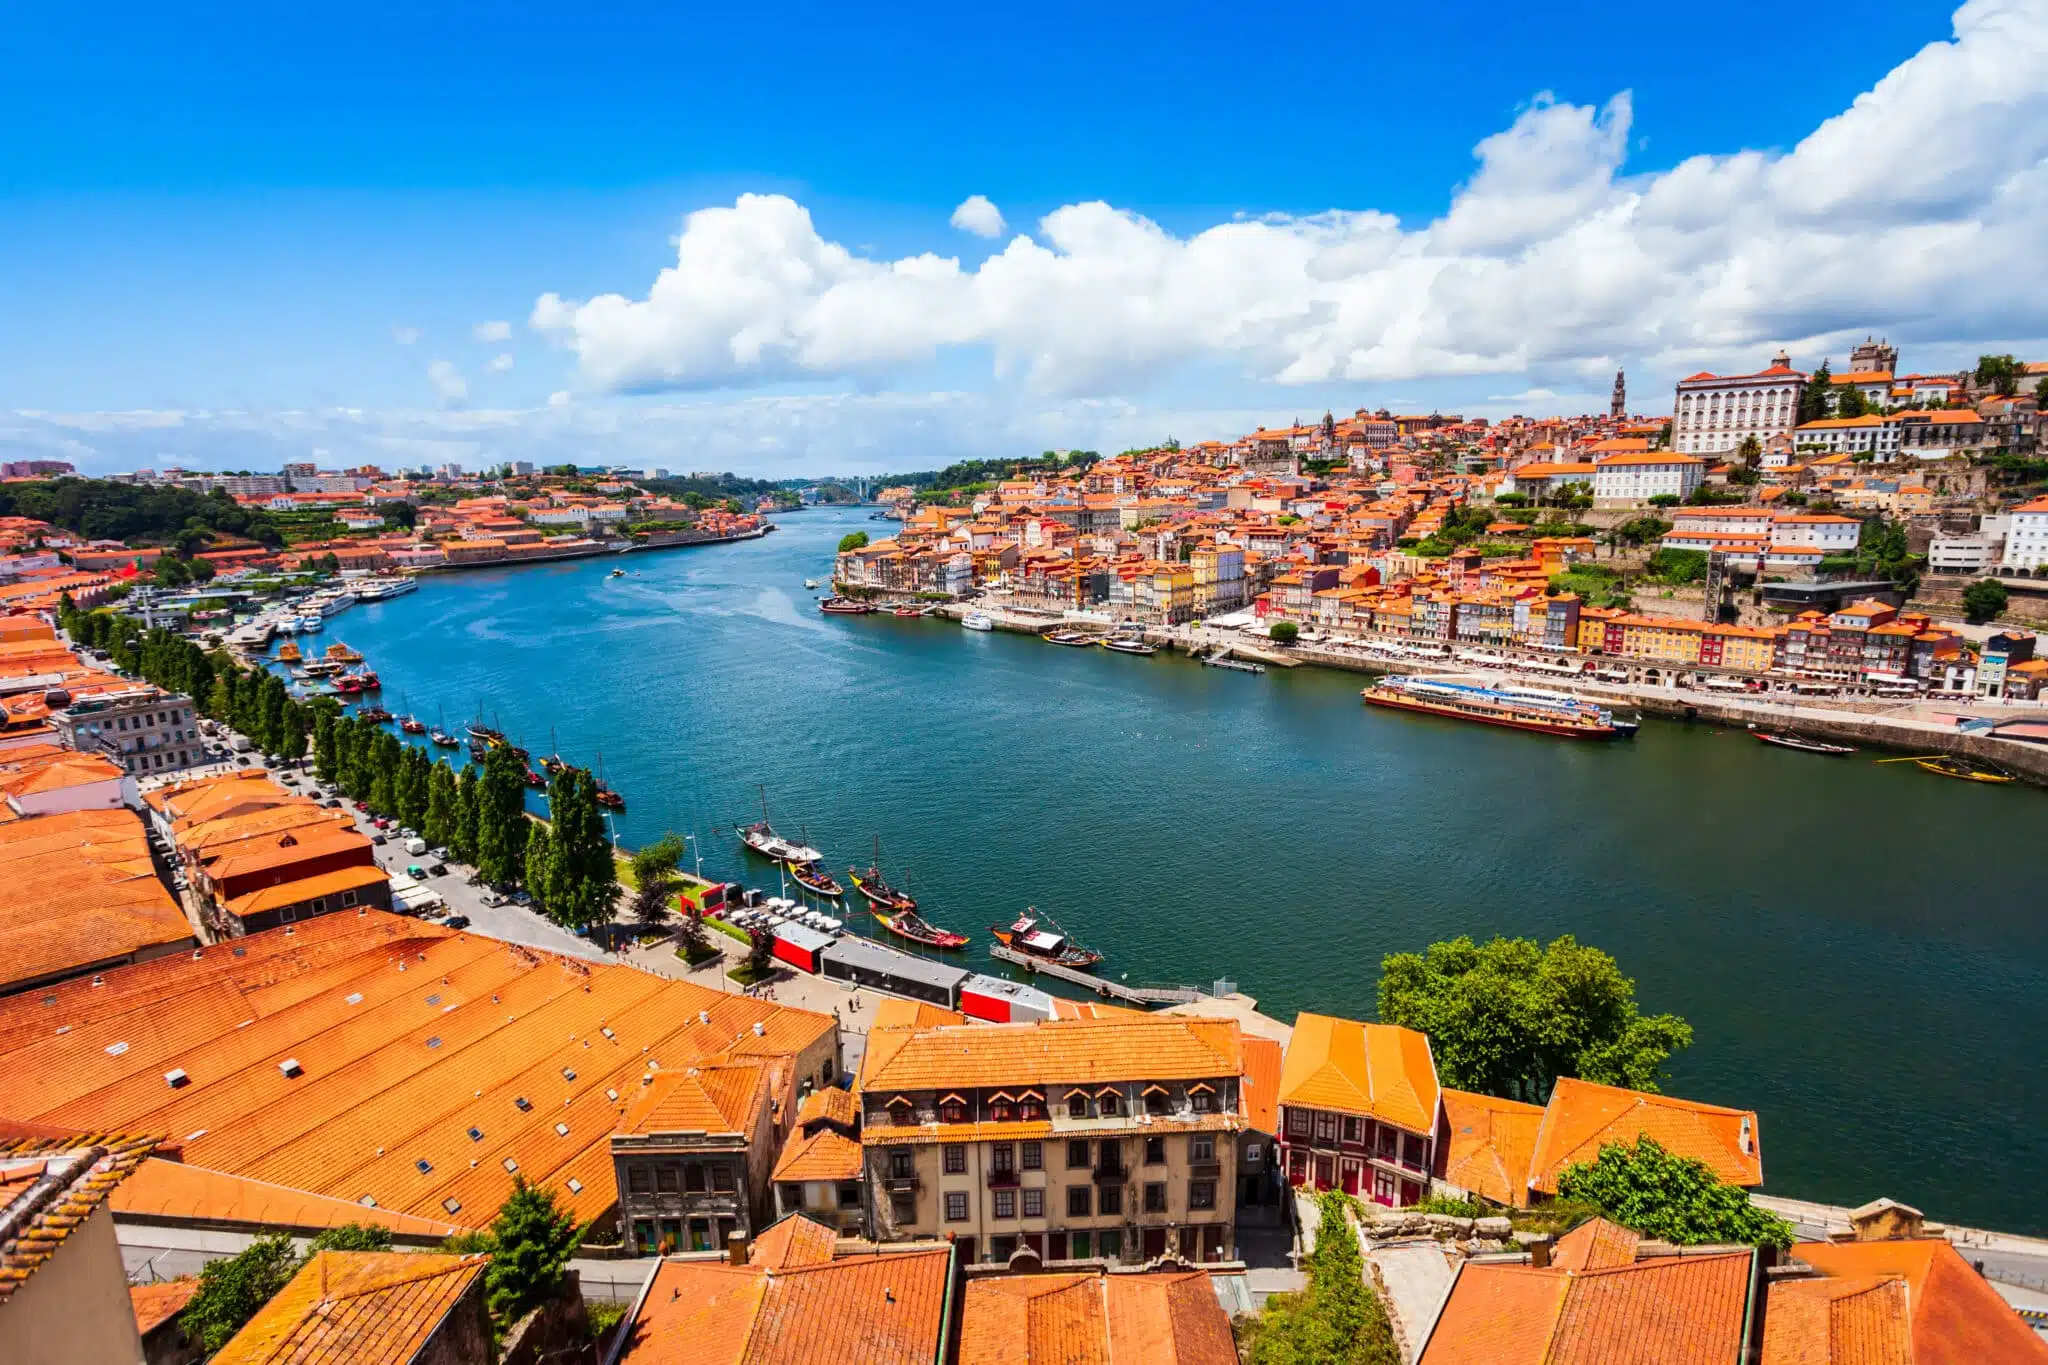 Maisons aux toits oranges à Porto